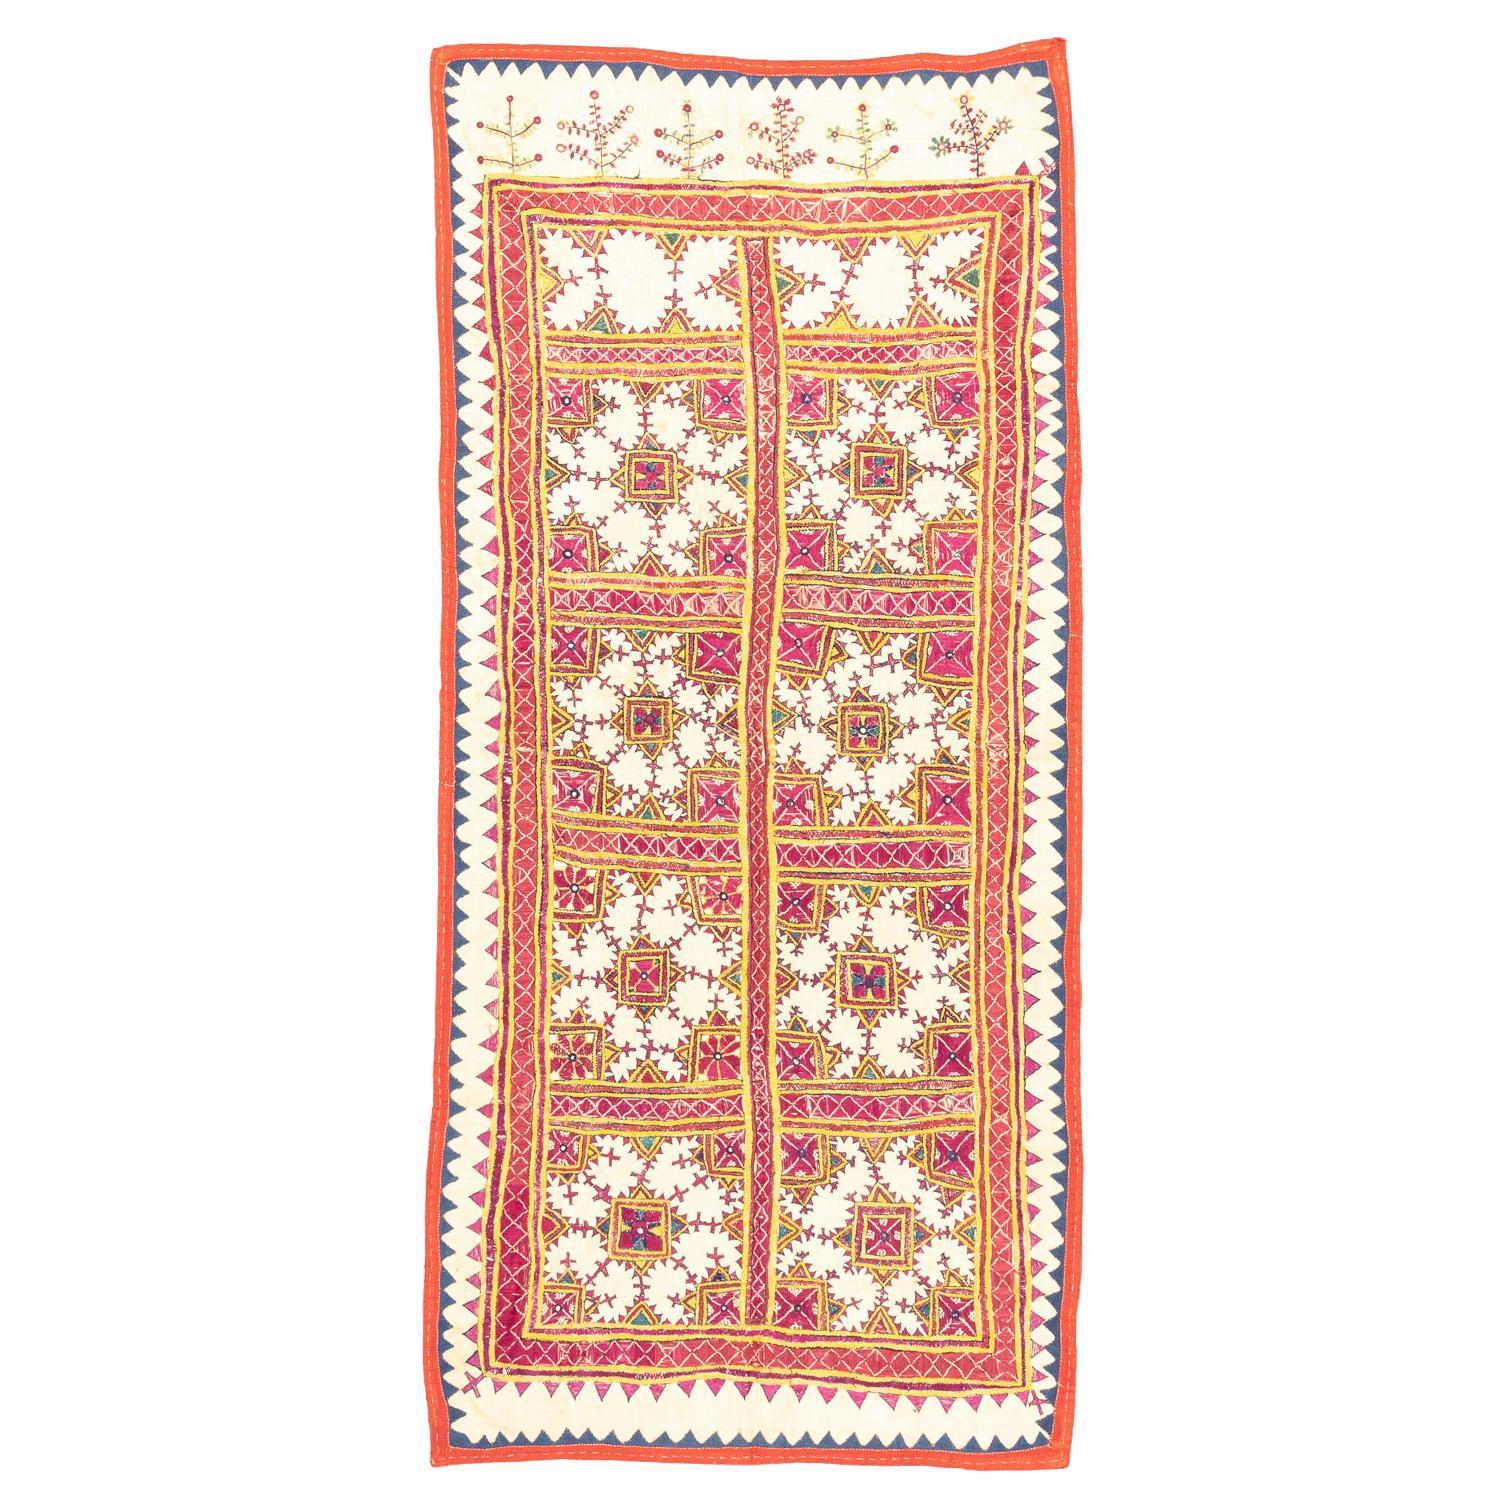 Antique Uzbekistan Embroidery Zig-Zag Border Textile, 1920-1950 For Sale